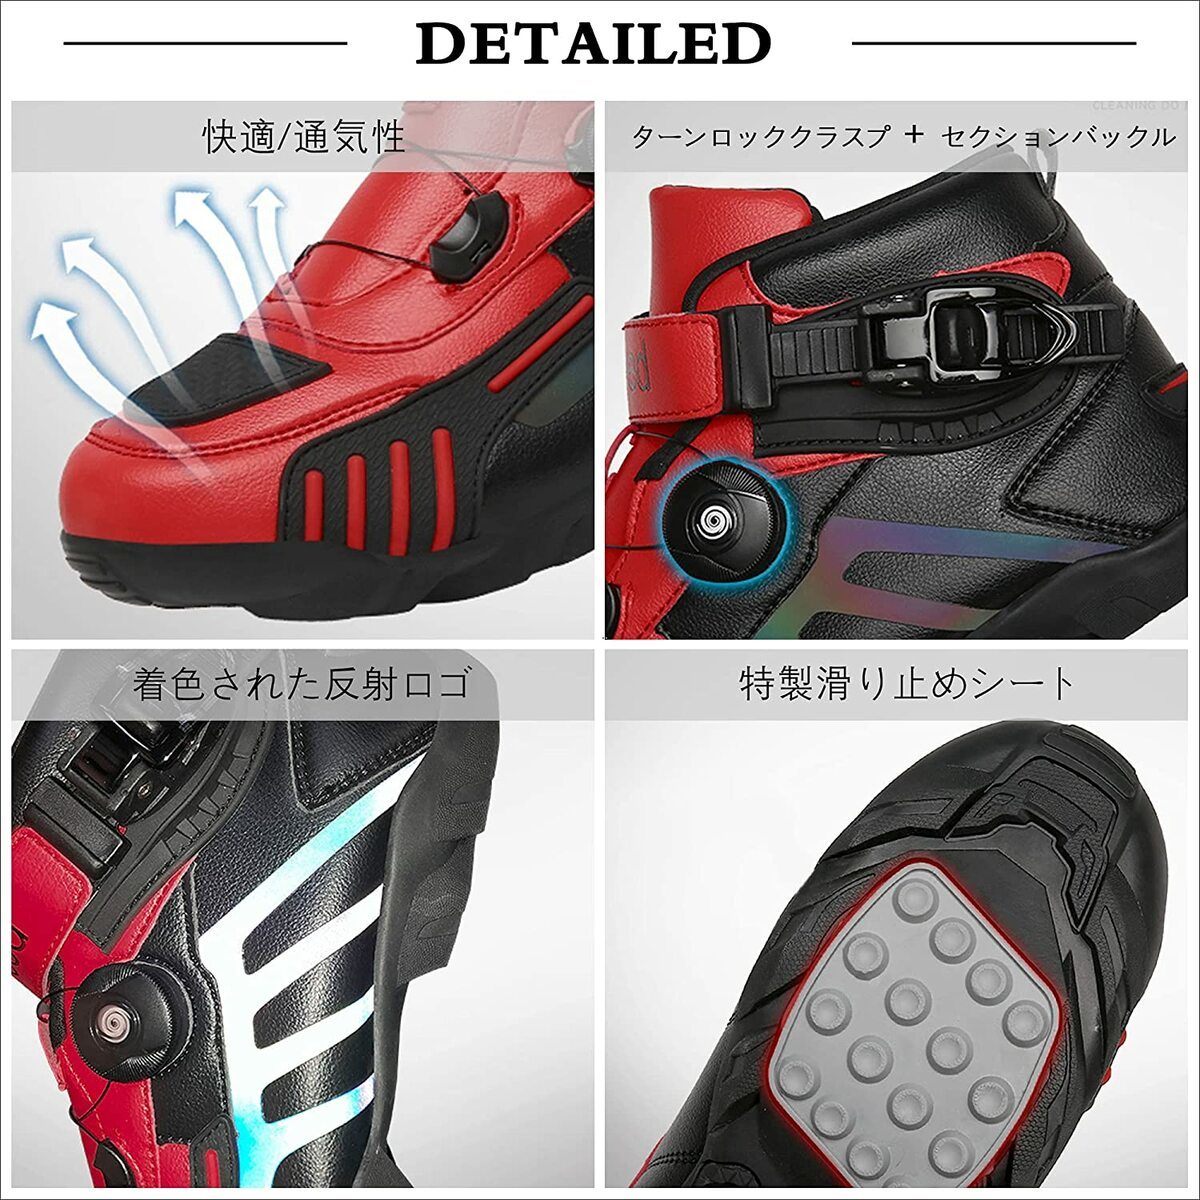 バイク用ブーツ オートバイ靴 3色 ライディングブーツ ライダーブーツ 強化防衛性 レーシングブーツ バイク用靴 耐衝撃 通気 26cm_画像7